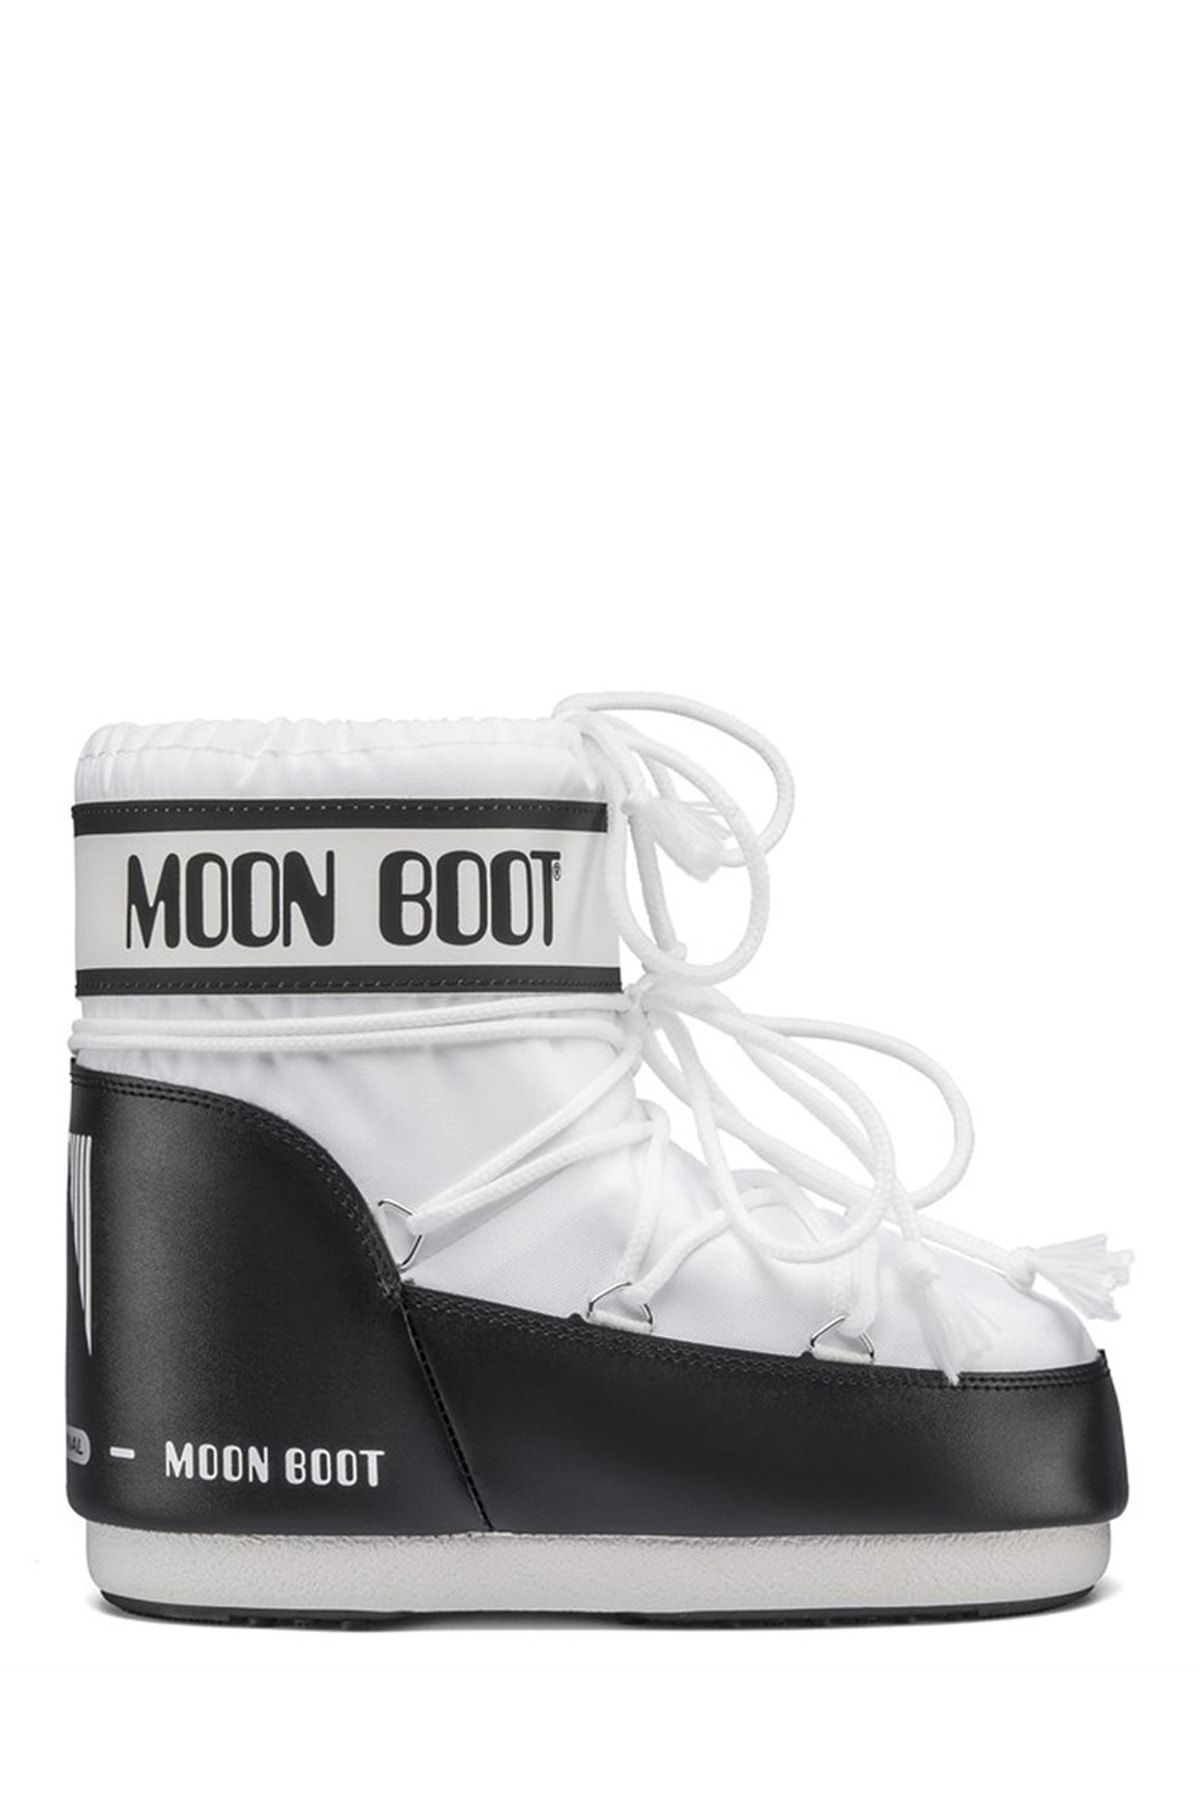 Moon Boot Beyaz Kadın Kar Botu 2monm2020009